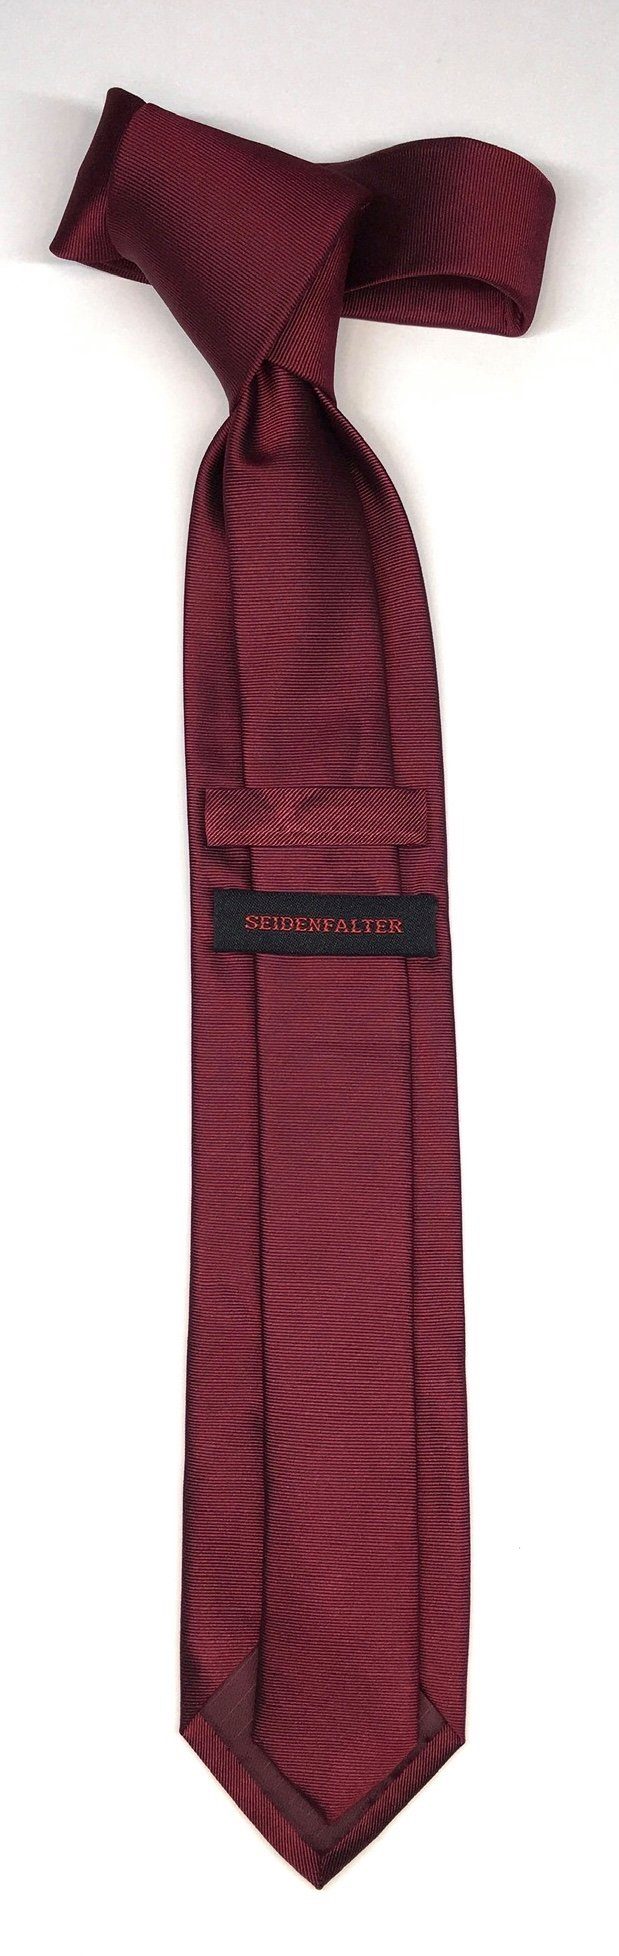 Krawatte edlen Seidenfalter Krawatte Wine Design Uni Seidenfalter Krawatte 7cm im Uni Seidenfalter